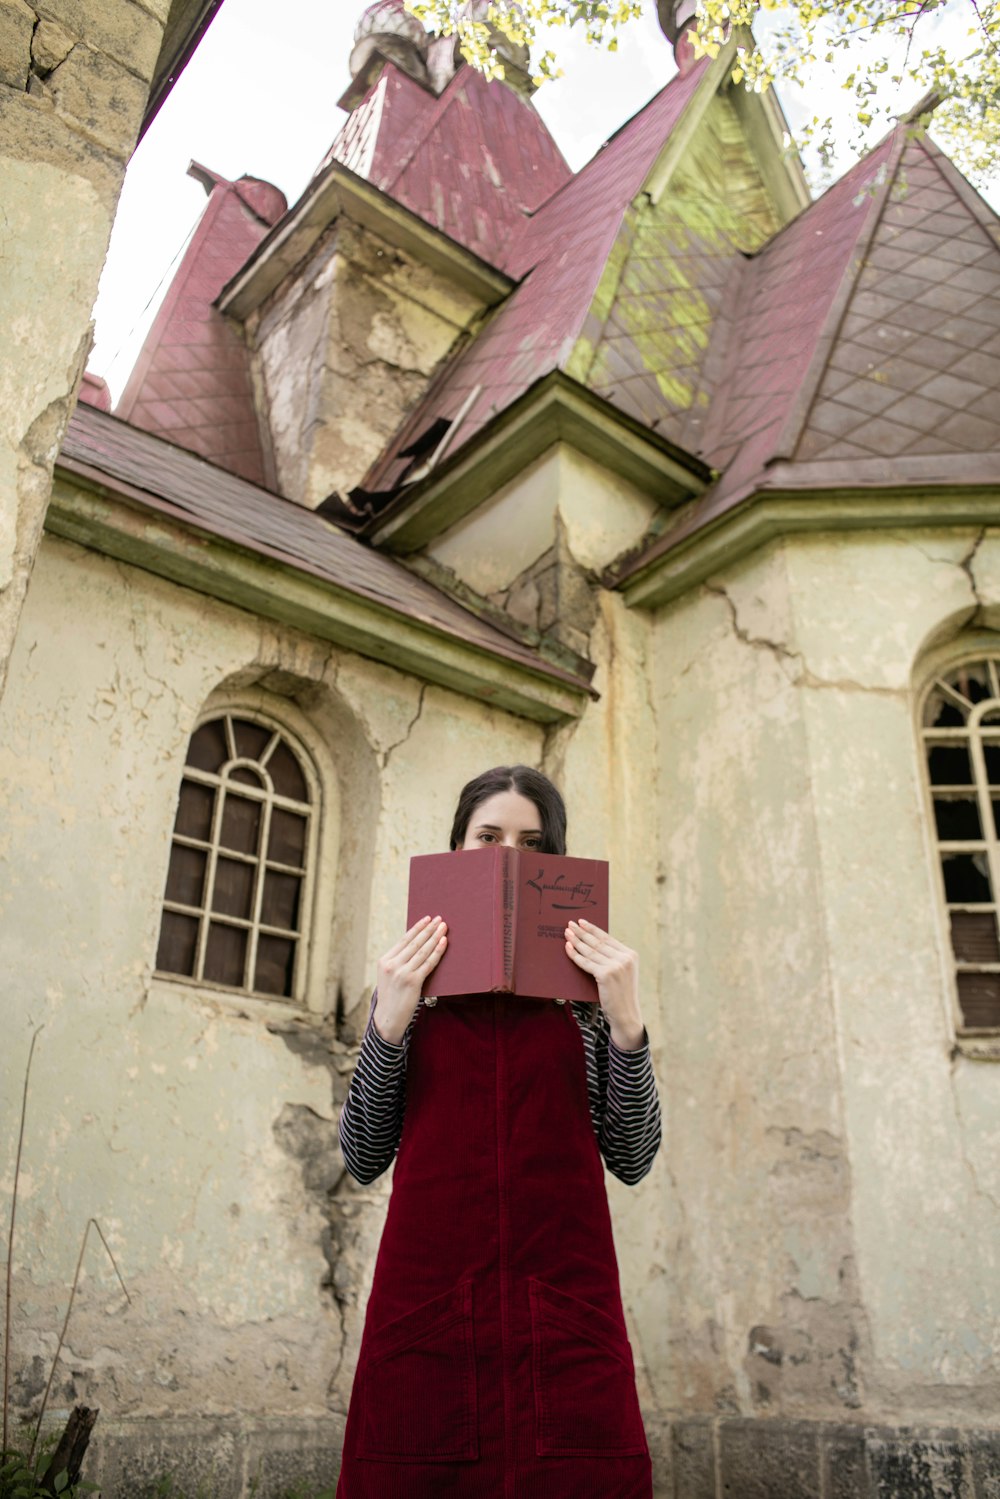 Una persona con un vestido rojo sosteniendo un libro frente a un edificio